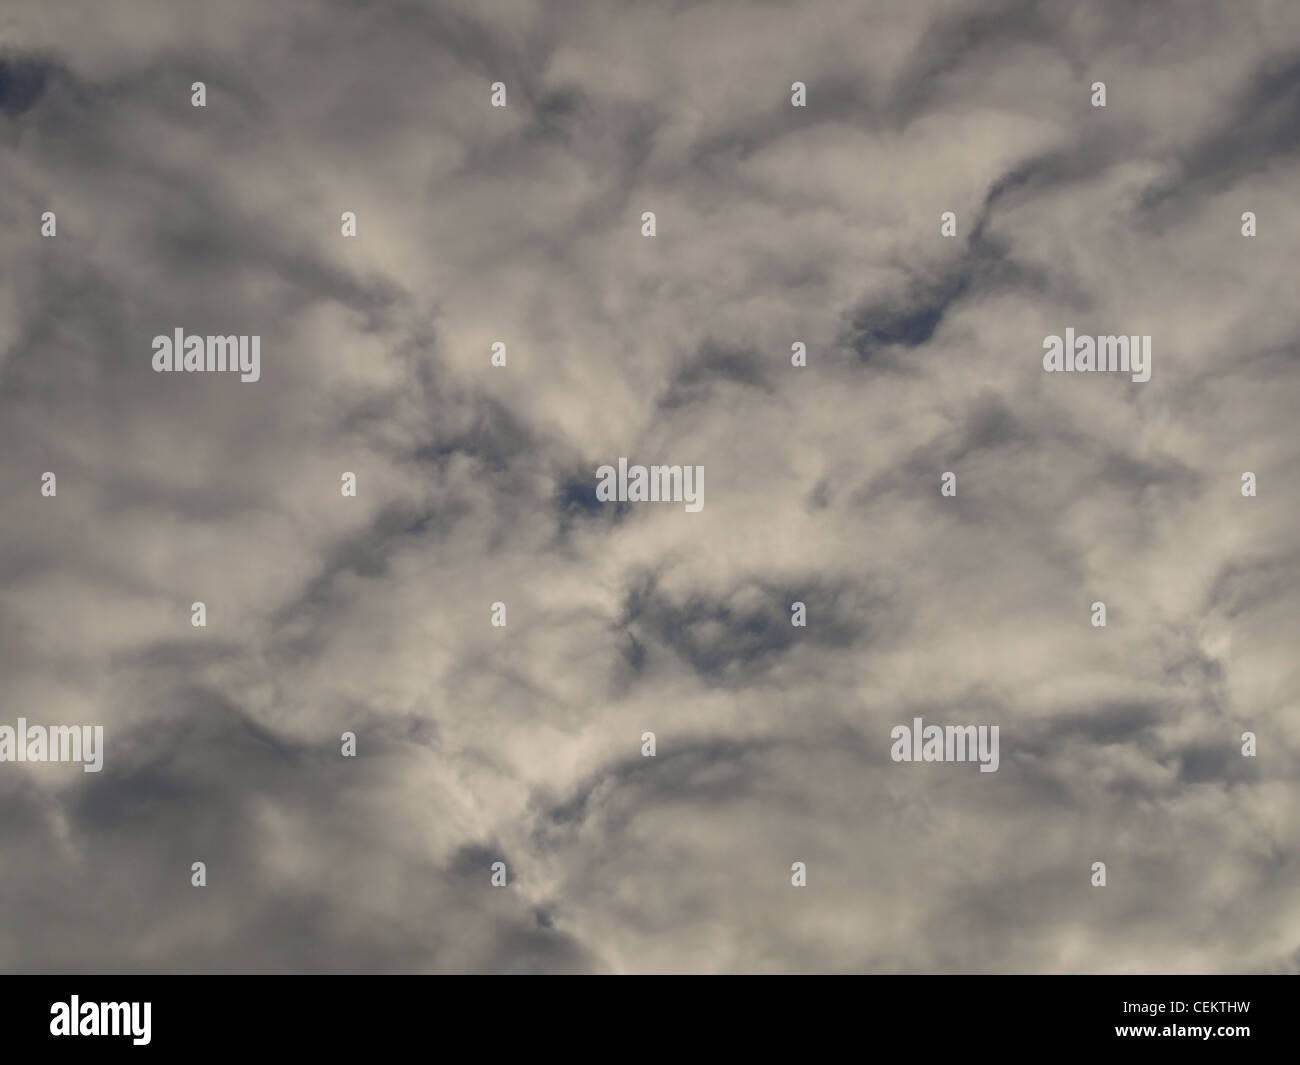 Mistica grigio nuvole / graue mystische Wolken Foto Stock